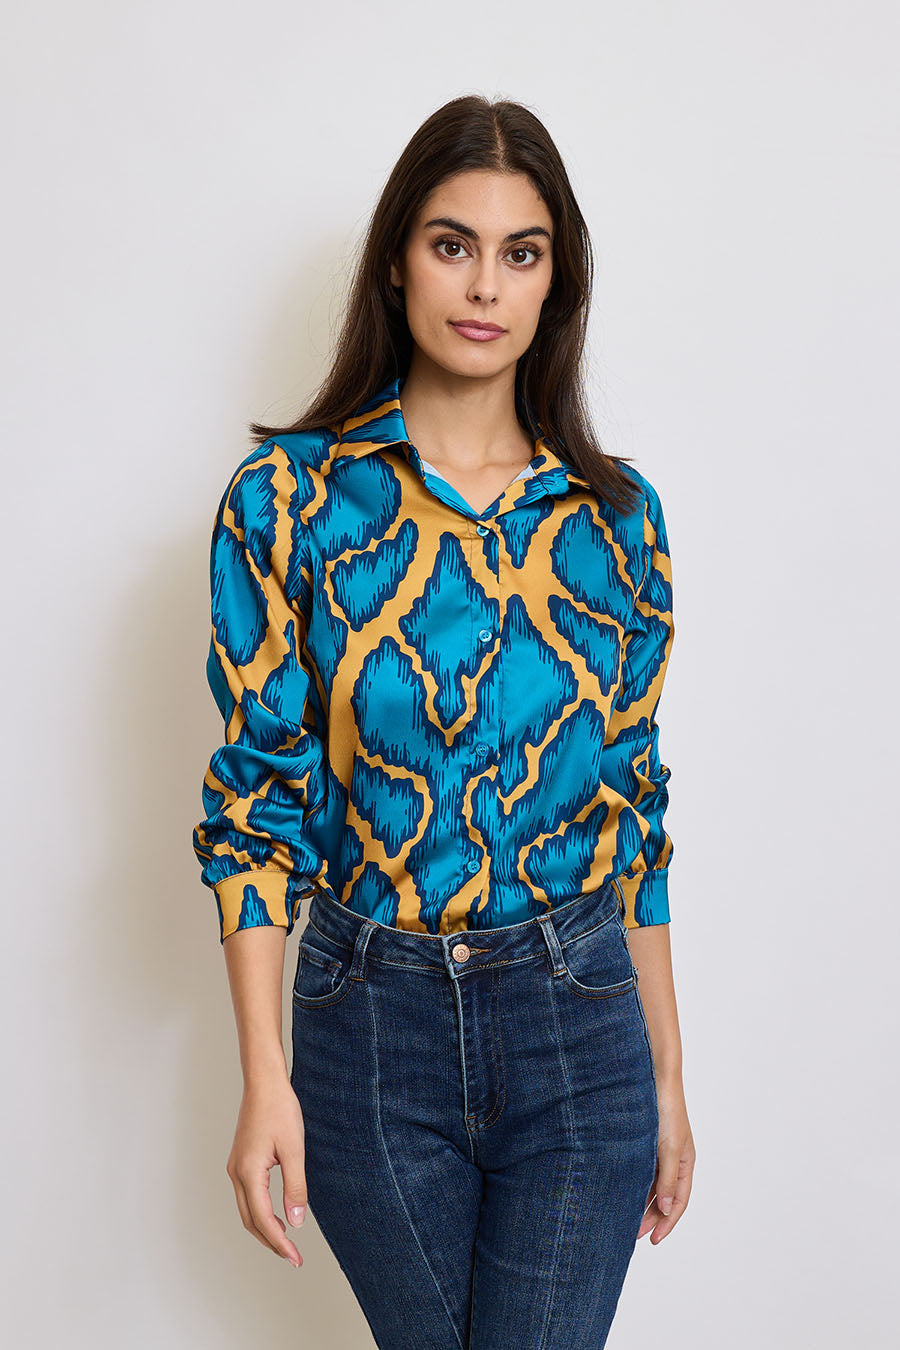 Γυναικείο πουκάμισο Melania, Γαλάζιο 1